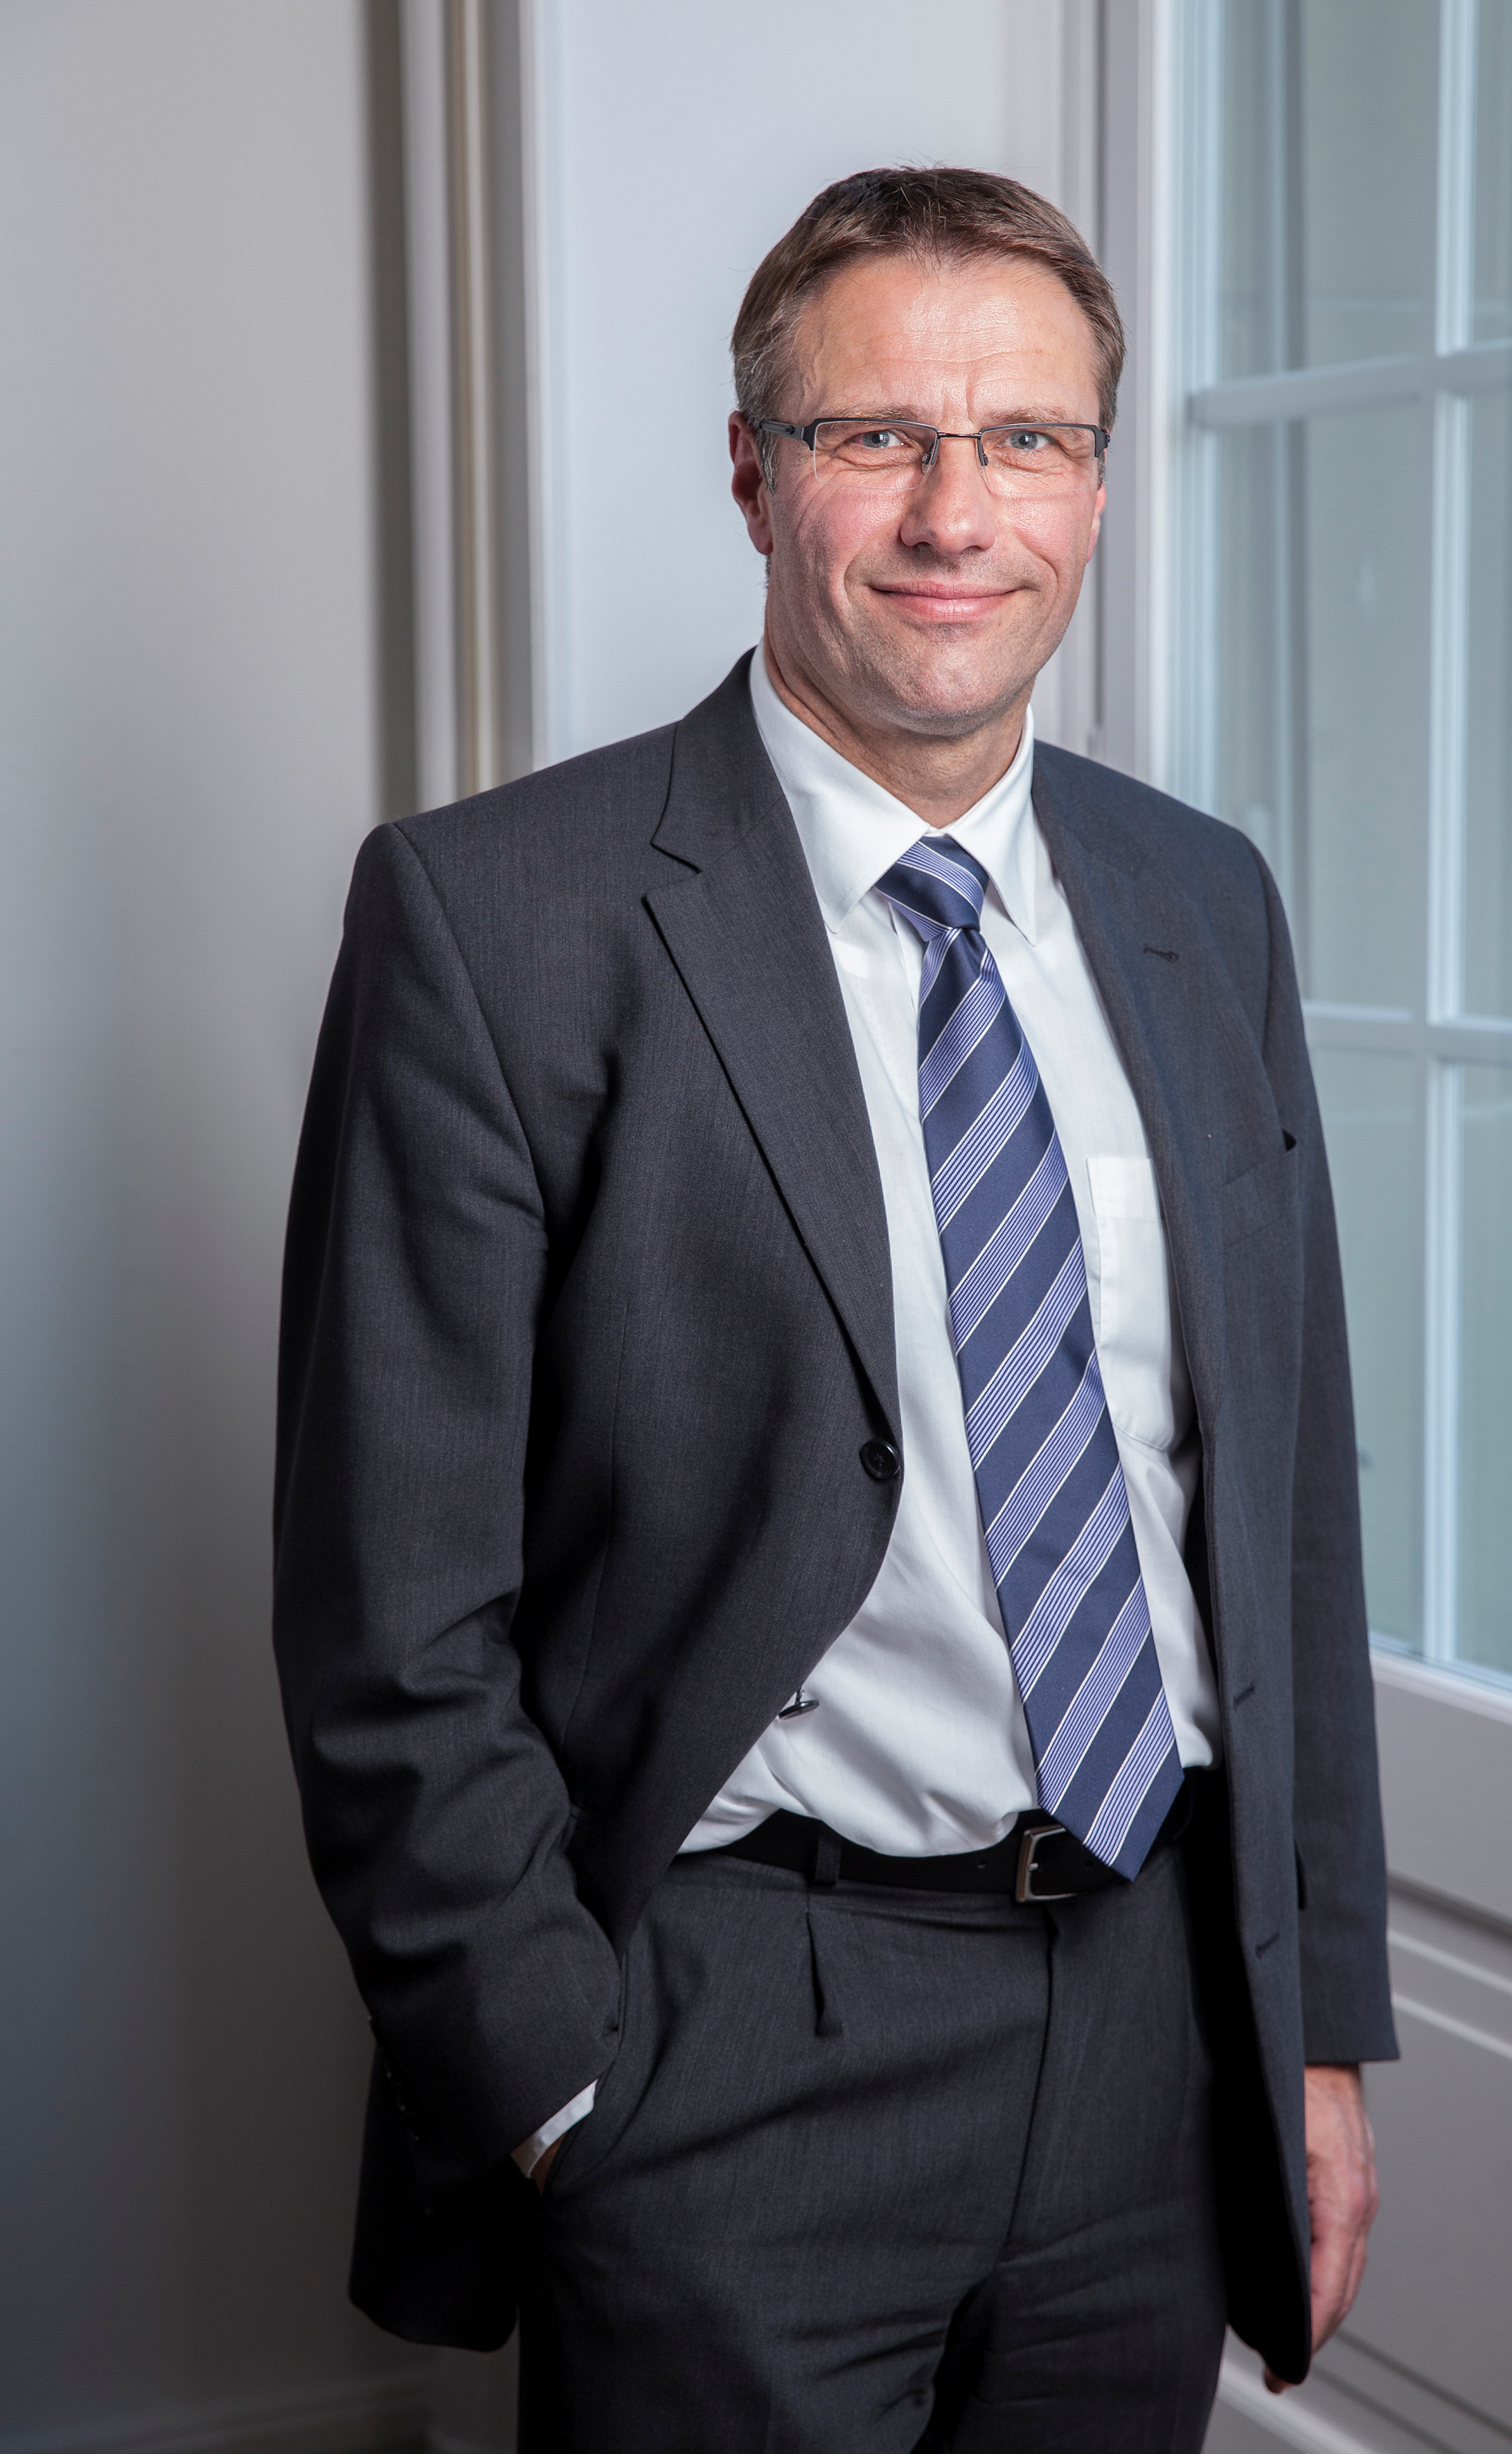 Portrait von Markus Gygax, neuer CEO der Valiant Bank